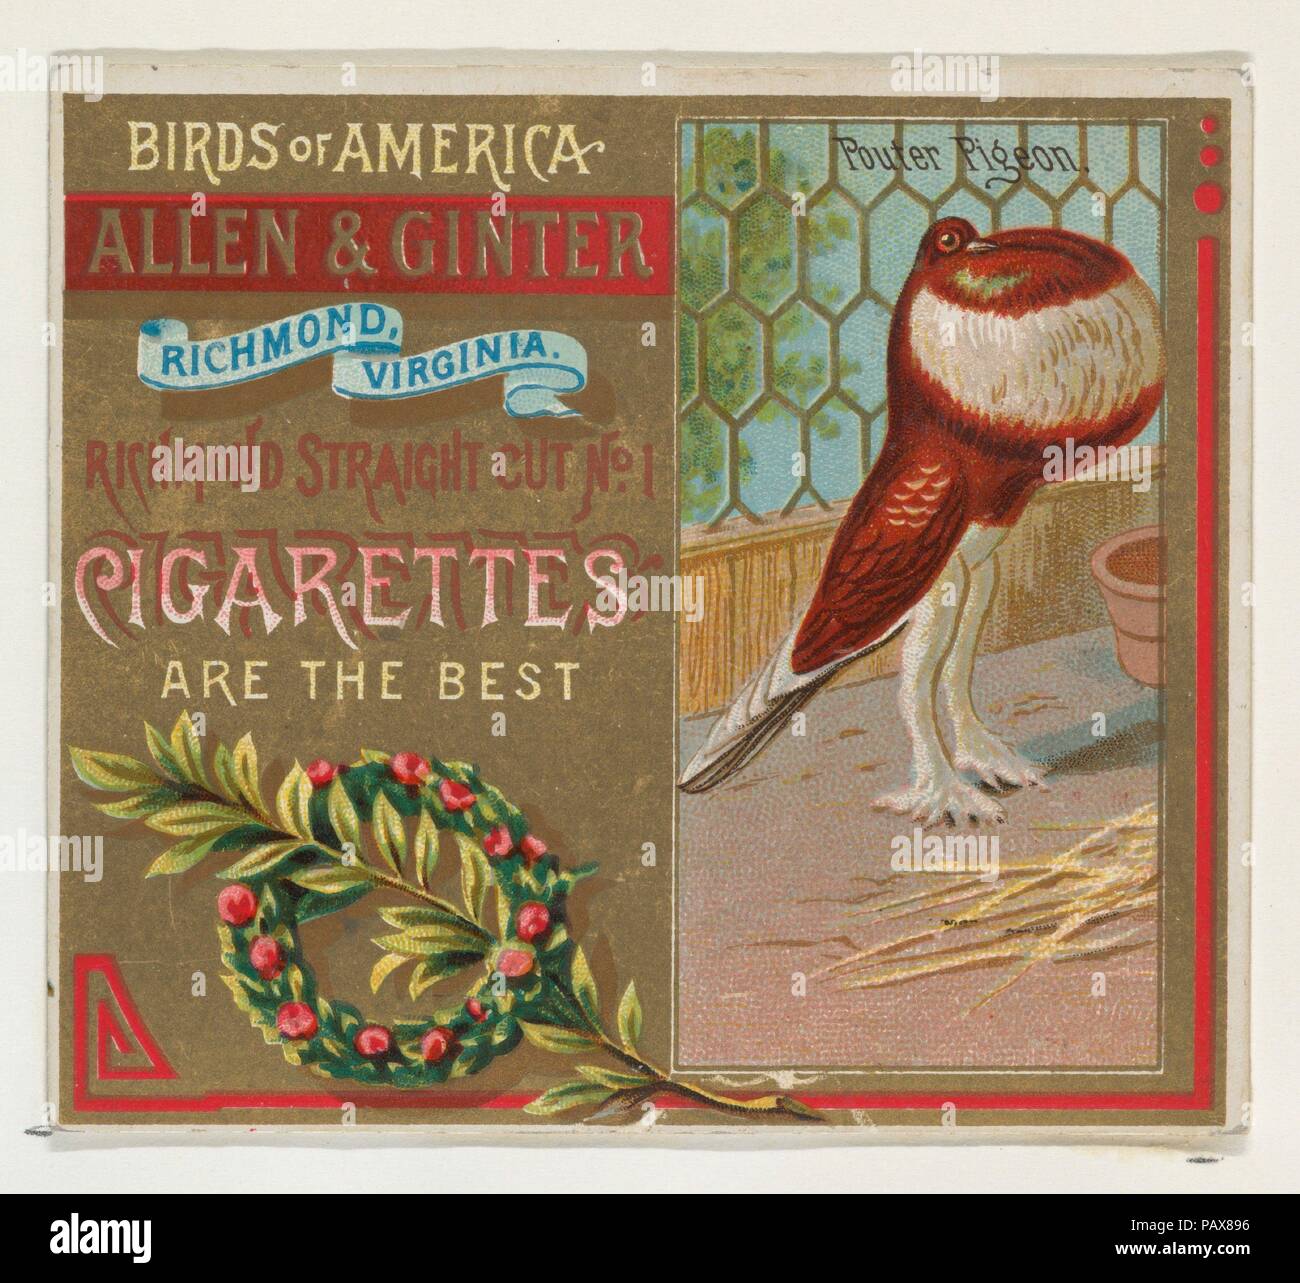 Piccione Pouter, da uccelli d'America serie (N37) per Allen & Ginter sigarette. Dimensioni: foglio: 2 7/8 x 3 1/4 in. (7,3 x 8,3 cm). Editore: Rilasciato da Allen & Ginter (American, Richmond, Virginia). Data: 1888. Scambio di carte dal 'Uccelli d'America' serie (N37), rilasciato nel 1888 in un set di 50 schede per promuovere Allen & Ginter marca di sigarette. La serie N37 riproduce le carte dalla N4 in una dimensione più grande. Museo: Metropolitan Museum of Art di New York, Stati Uniti d'America. Foto Stock